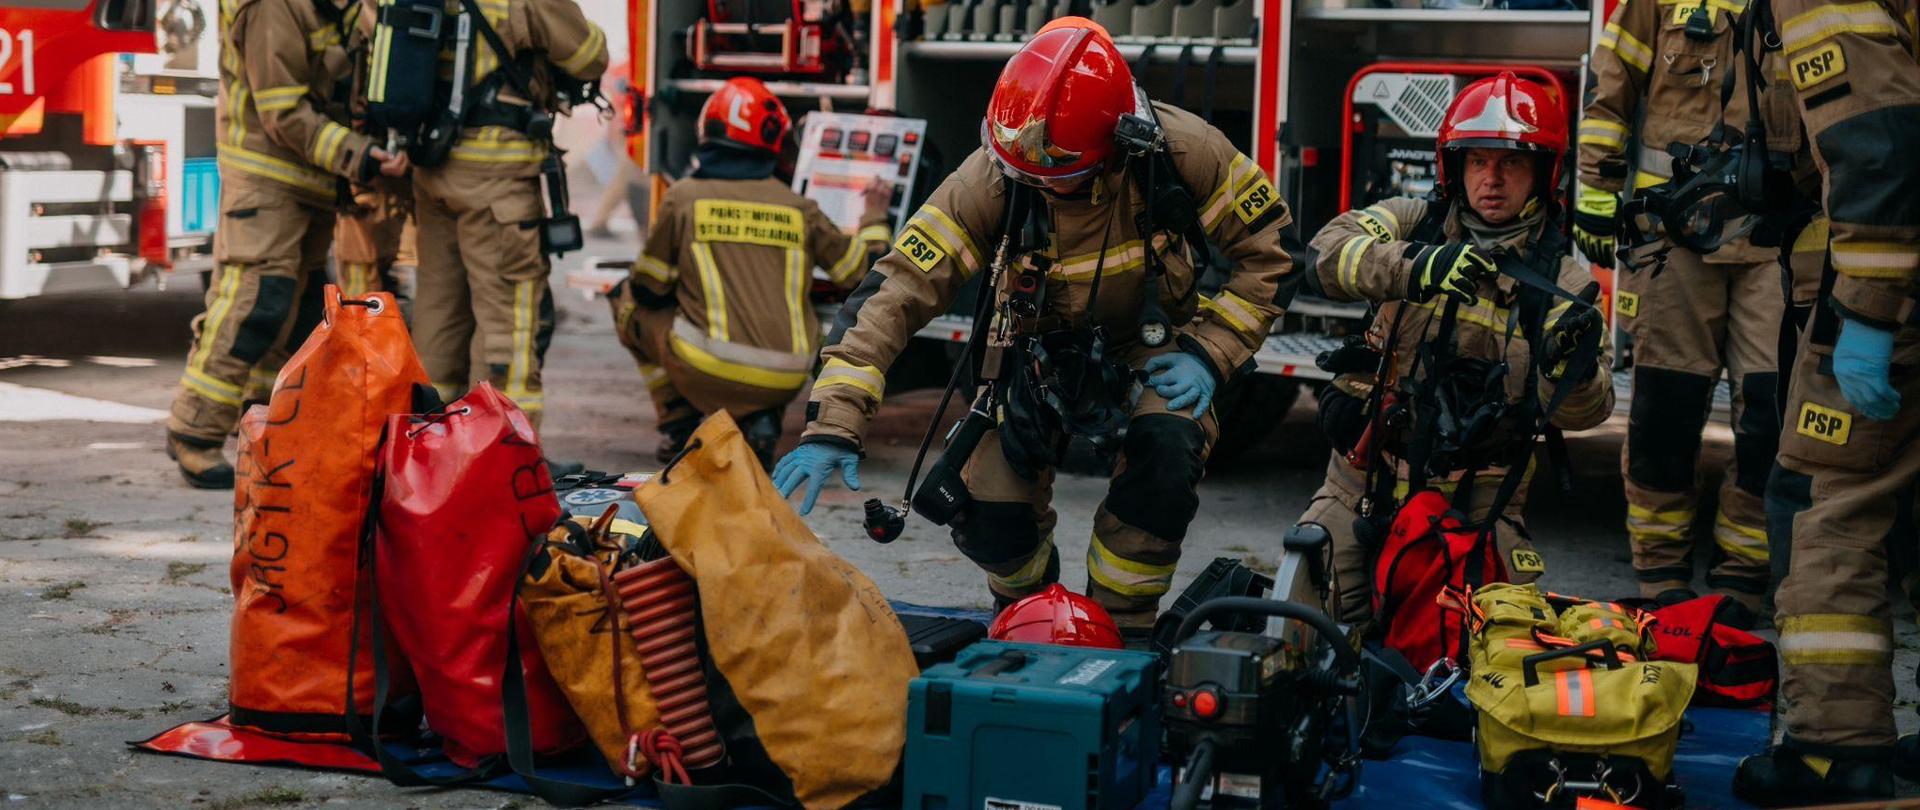 Na zdjęciu widzimy strażaków podczas przygotowania do wejścia na teren opuszczonego szpitala. Na macie ułożony sprzęt potrzebny do działań, a za nimi samochód pożarniczy z otwartymi skrytkami.